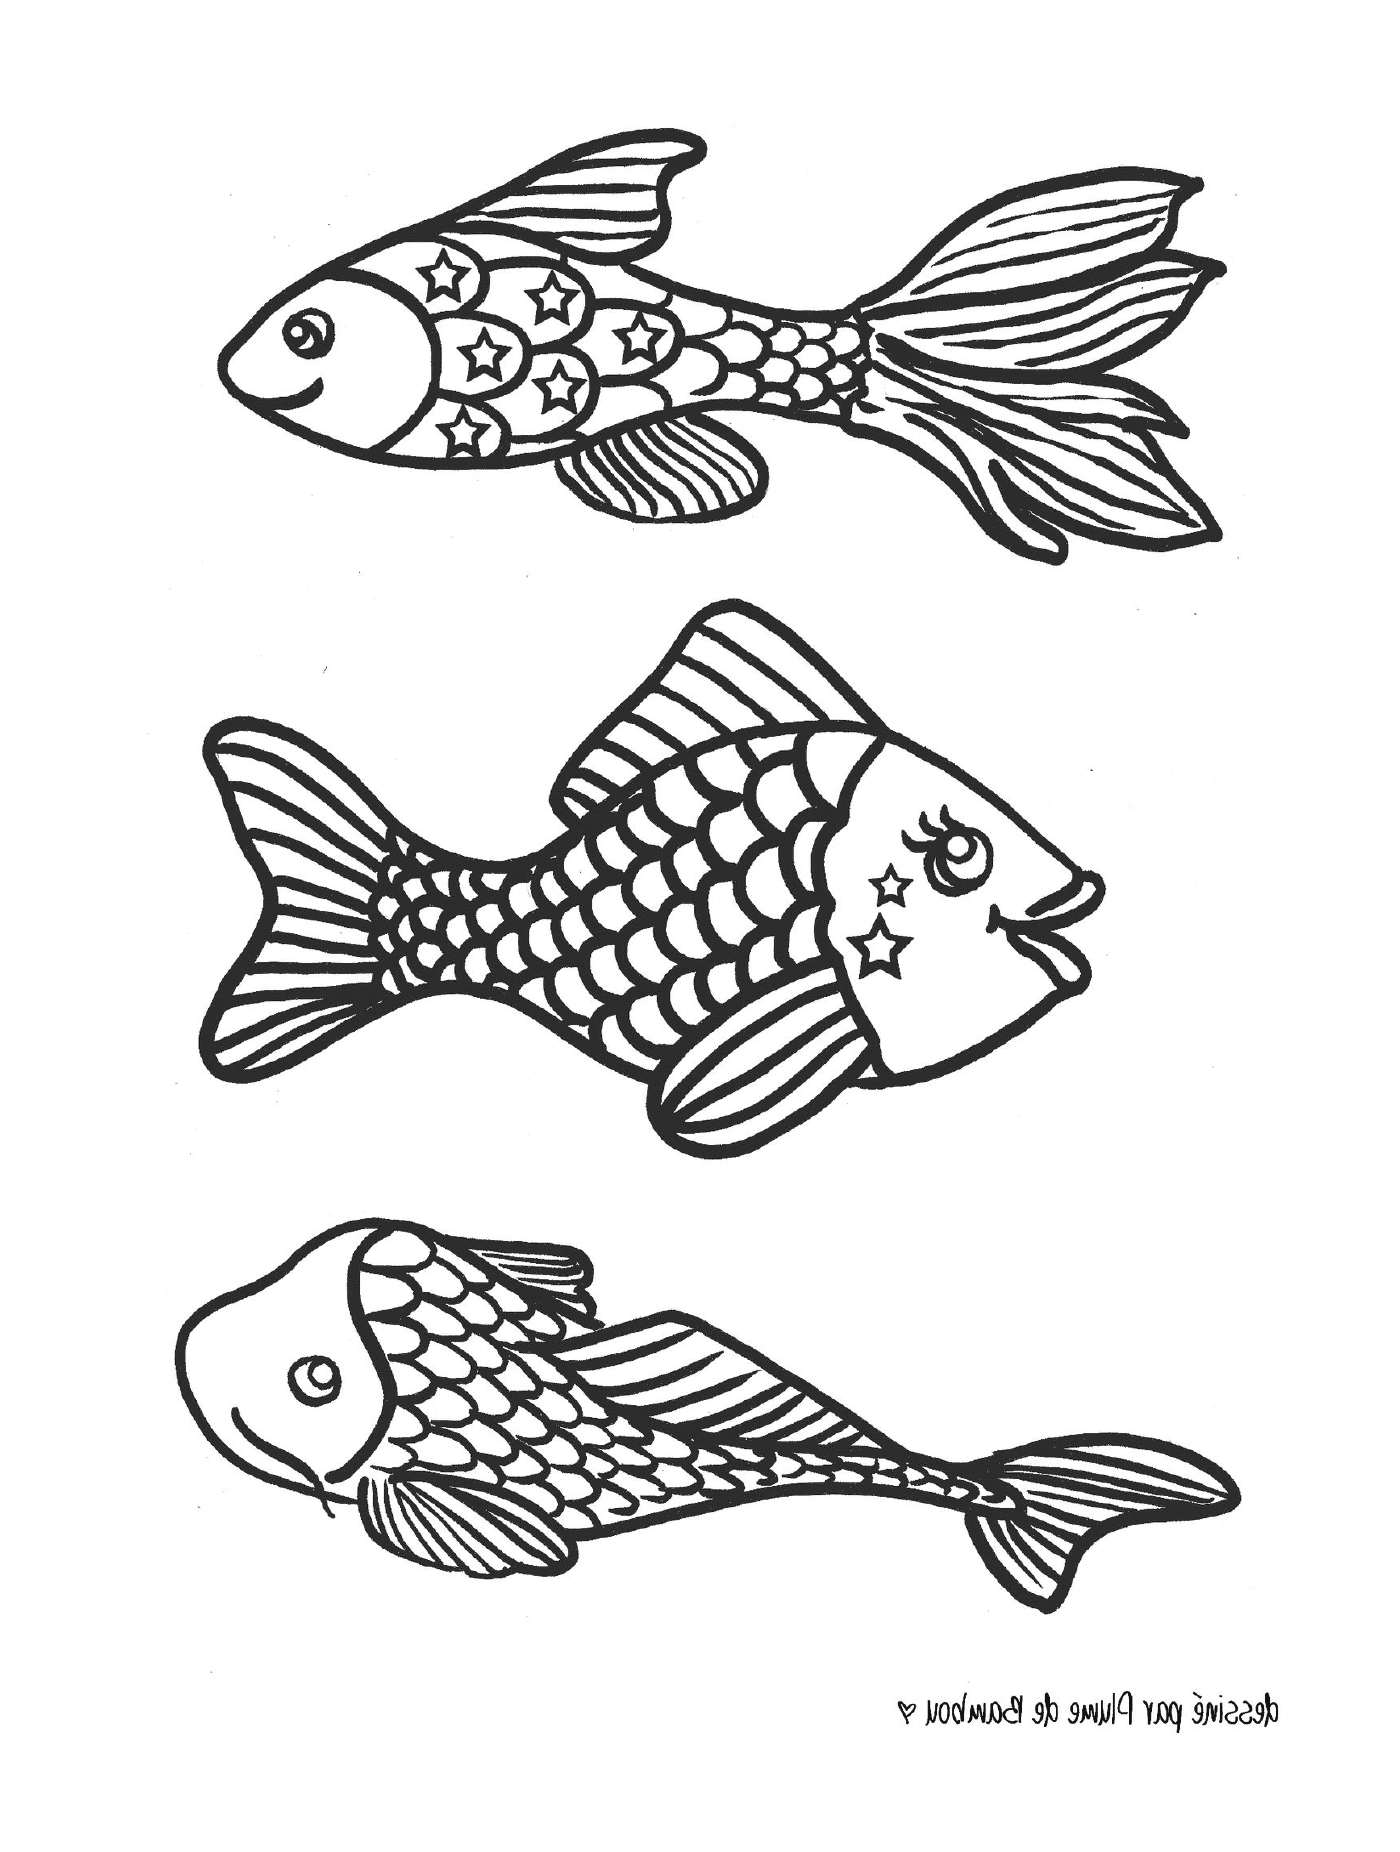  三条黑白鱼 